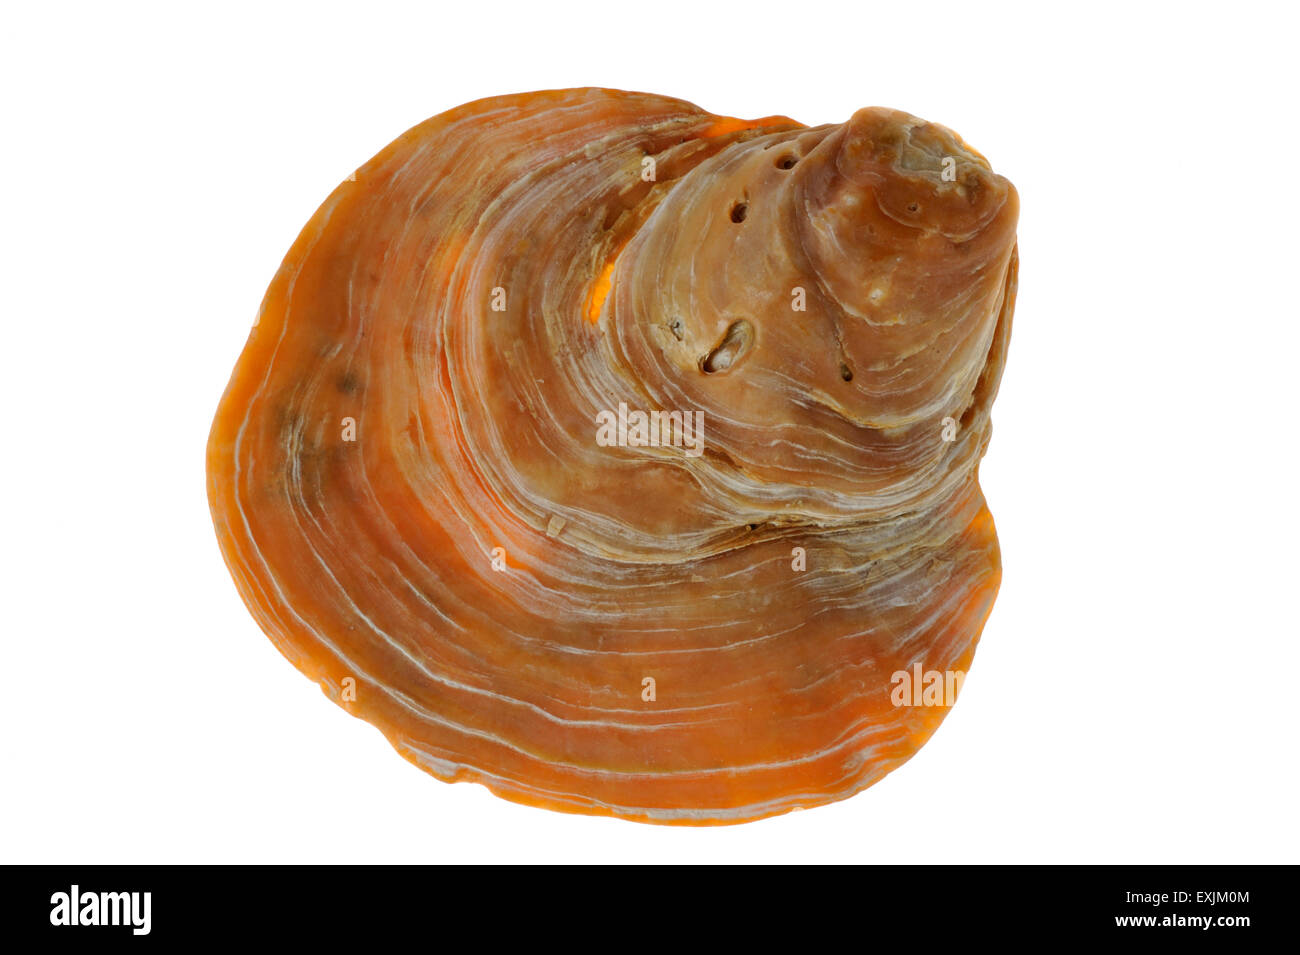 Saddle oyster / Jingle shell (Anomia ephippium) on white background Stock Photo